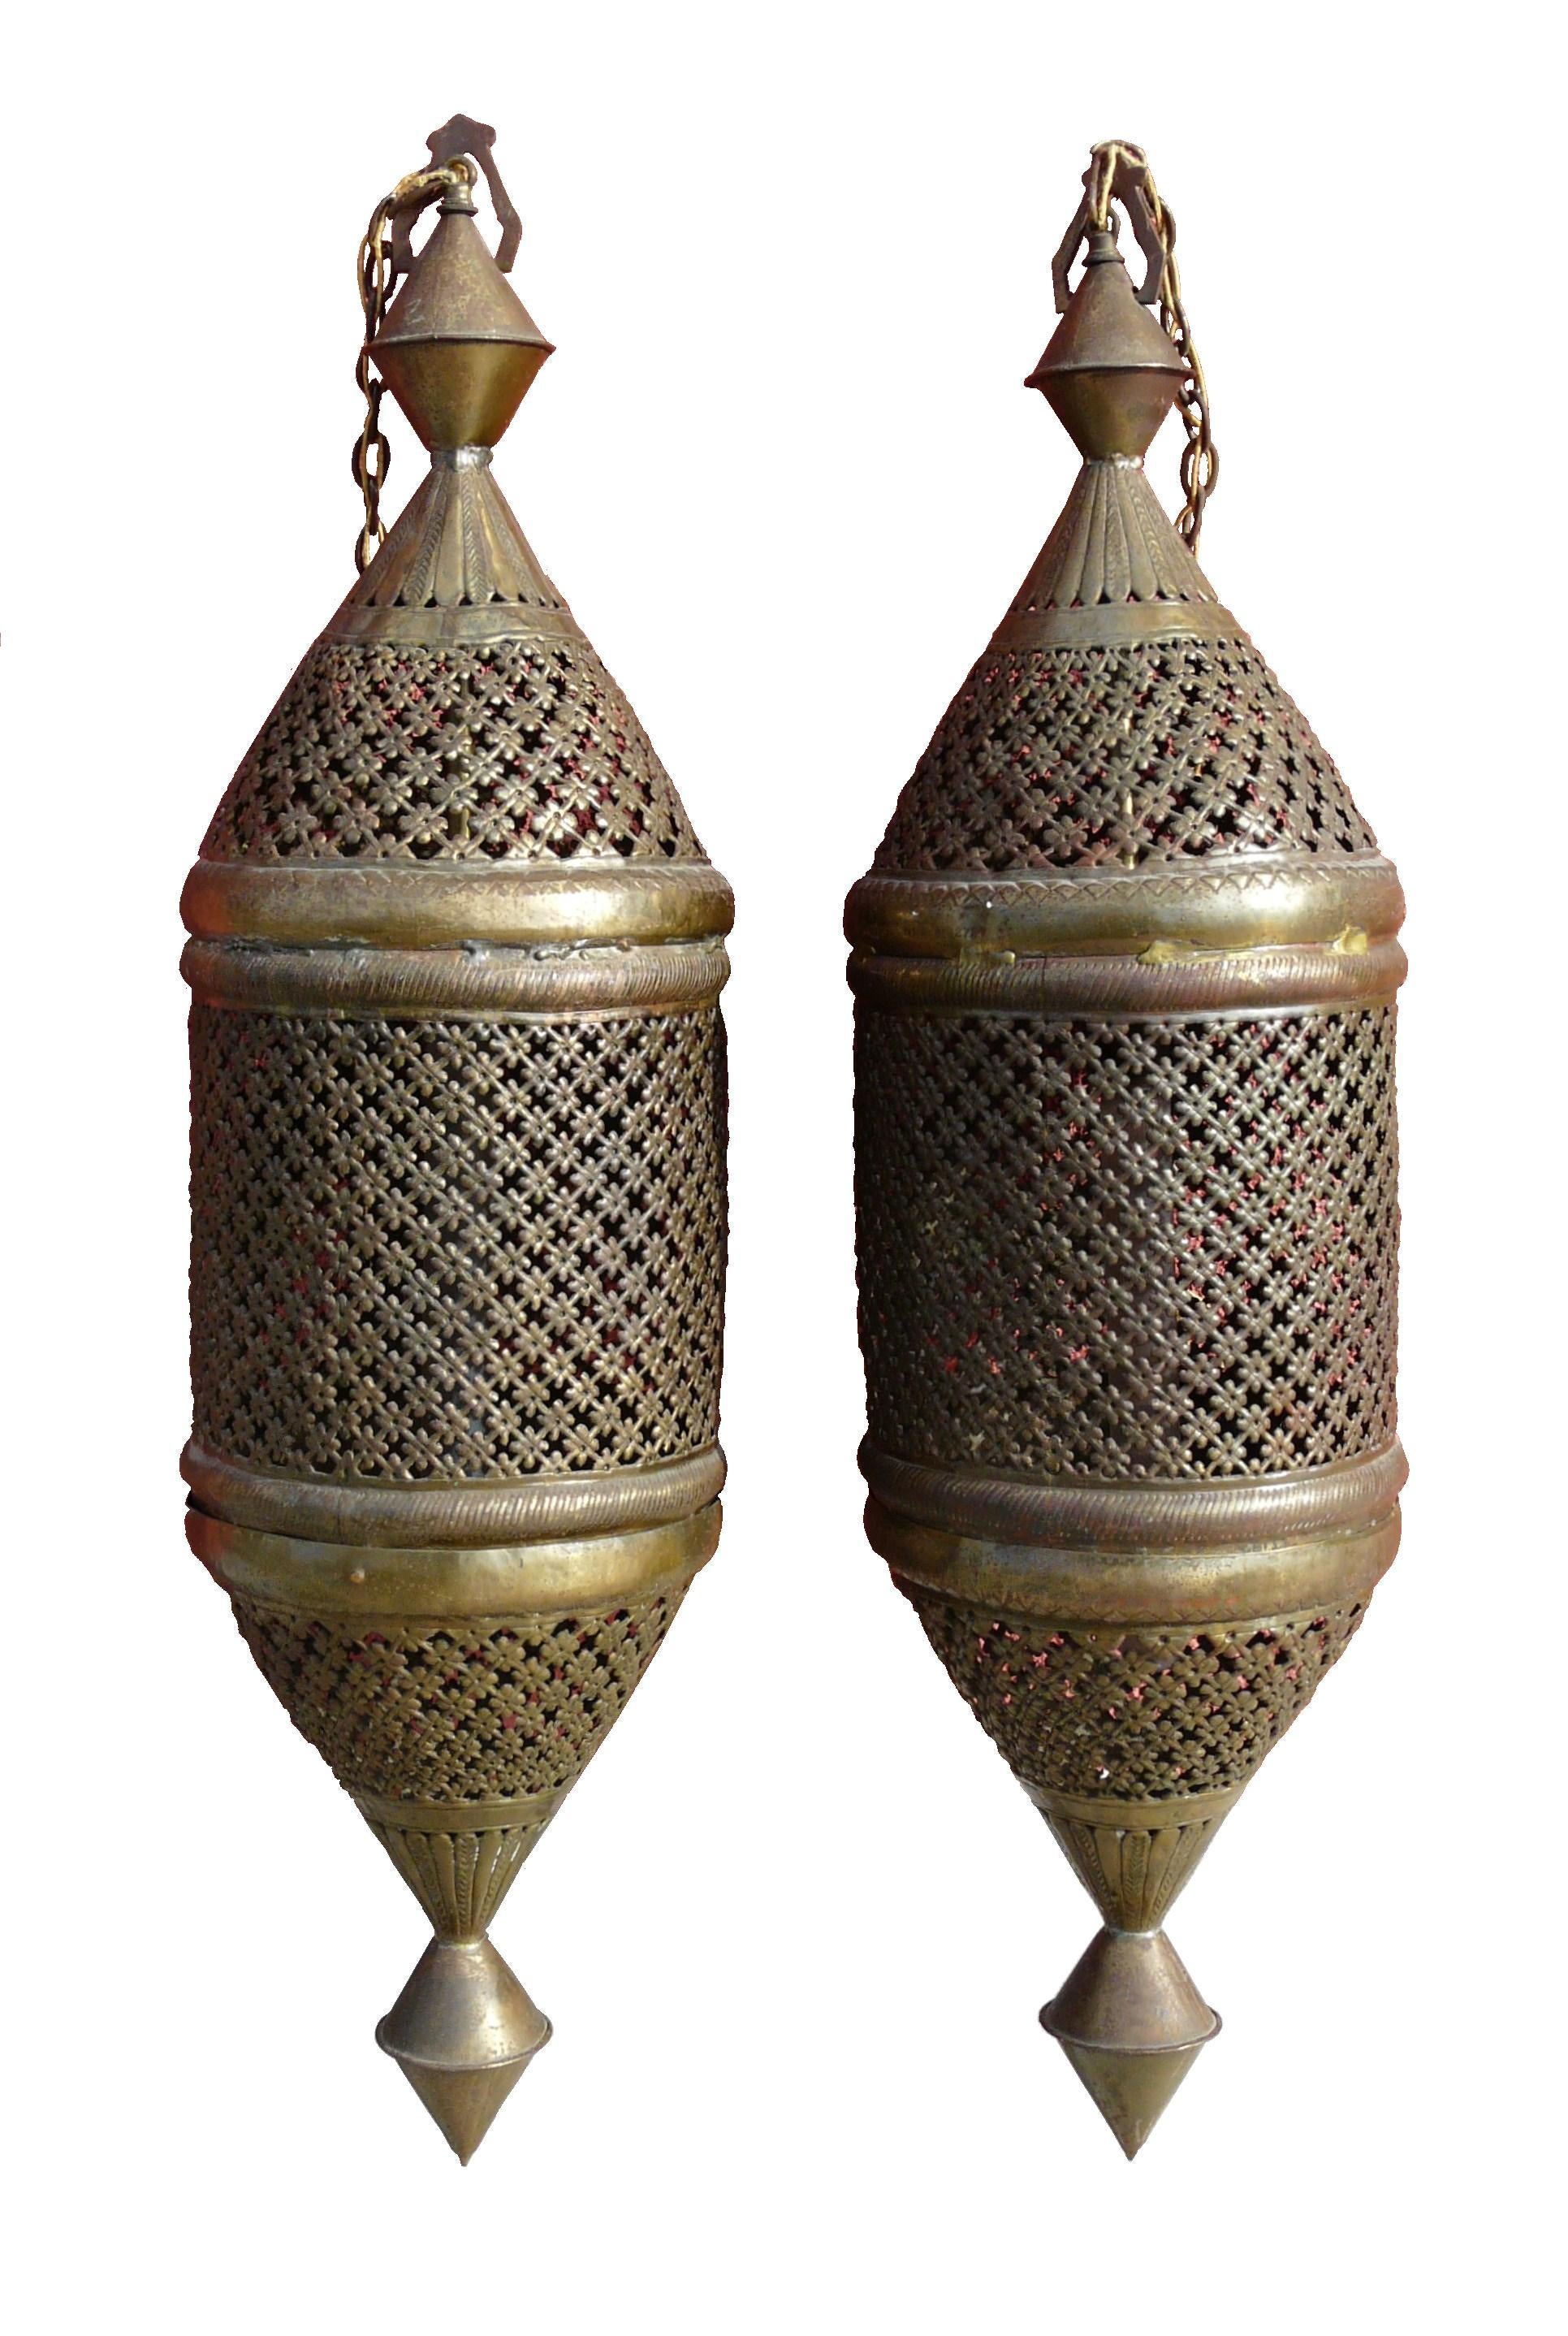 Pair Large Moroccan Pierced Pendant Lanterns Vintage For Sale